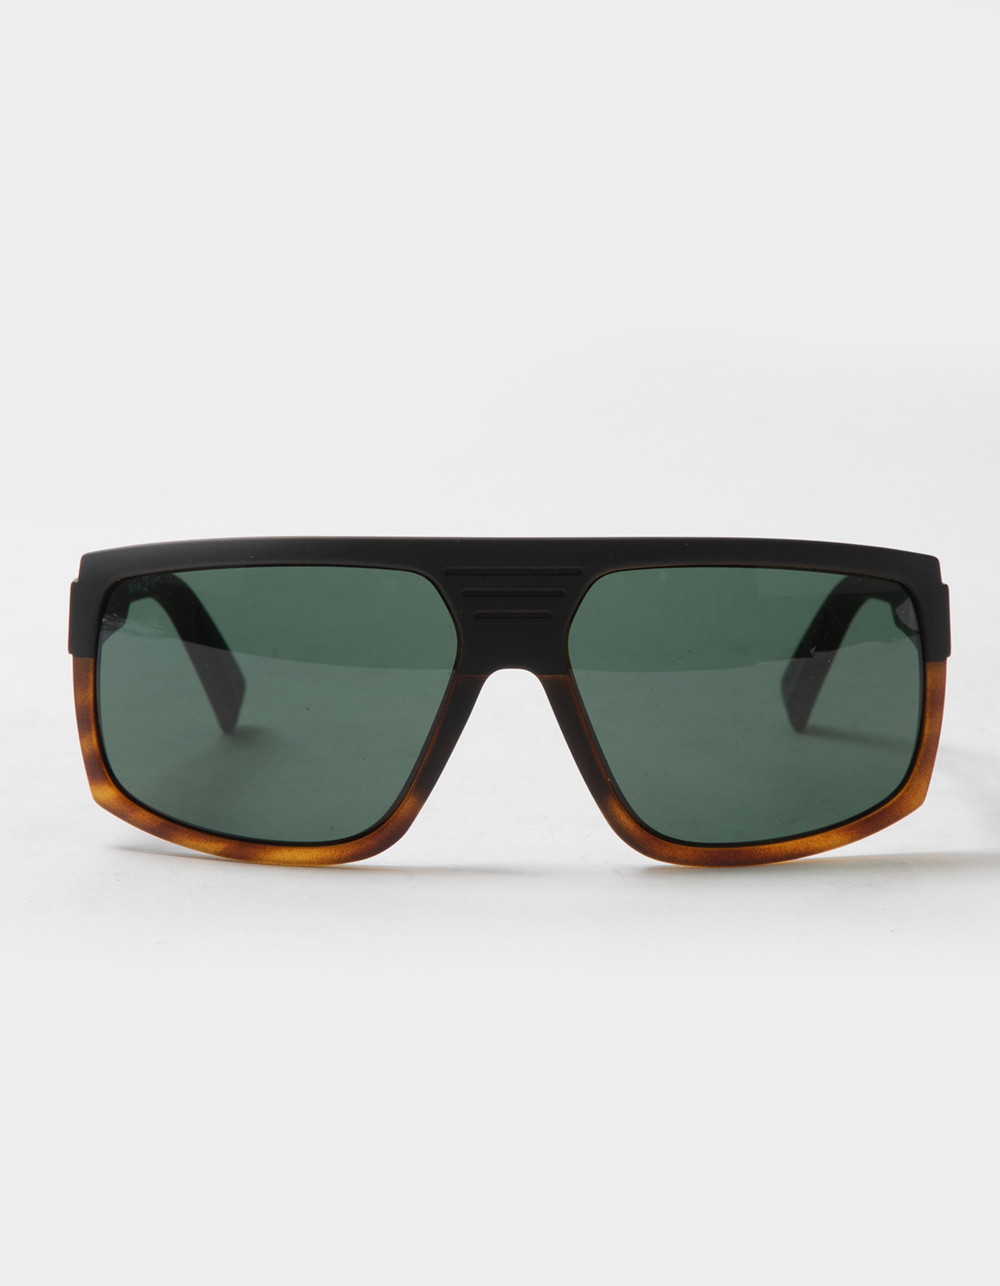 VONZIPPER Quazzi Hardline Black Tortoise Sunglasses - TORTOISE | Tillys